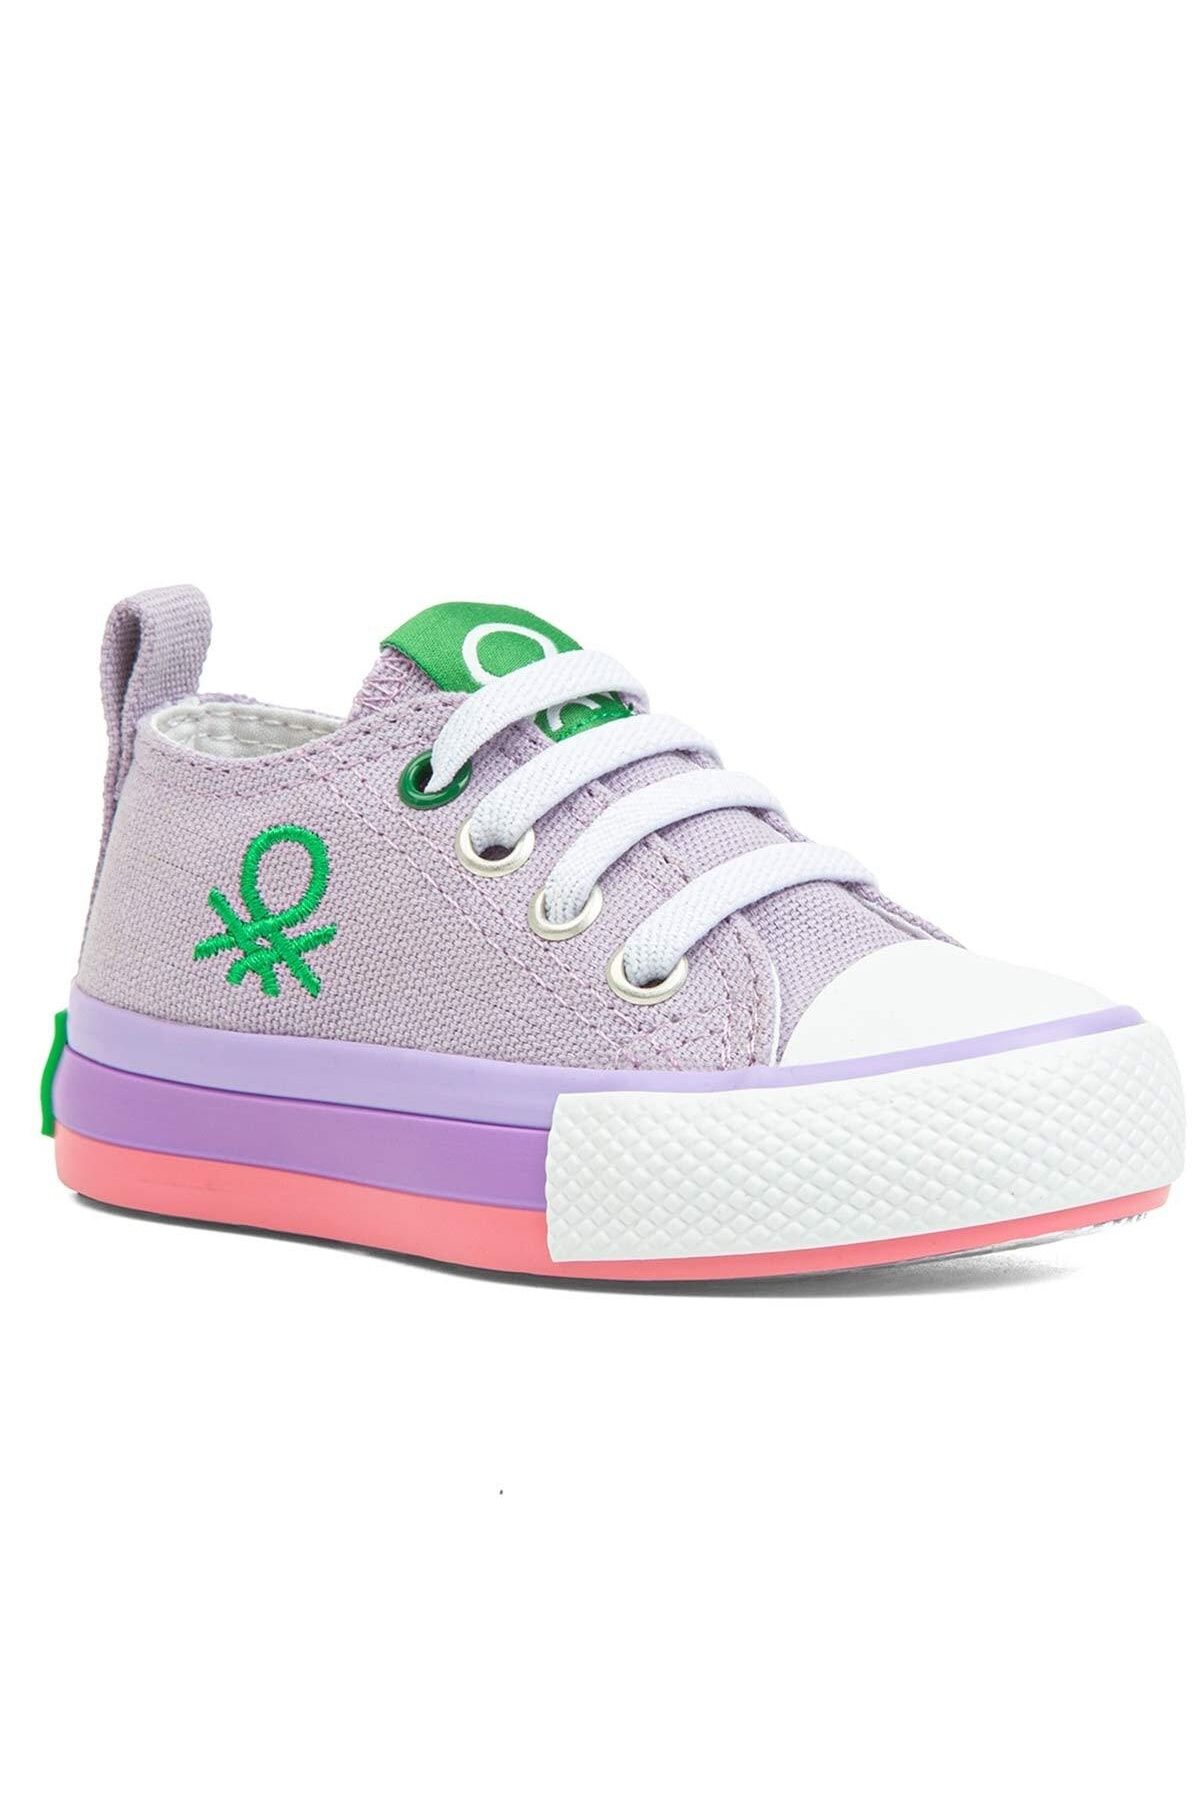 Benetton Kız Çocuk Spor Ayakkabı 21-25 Numara Lila